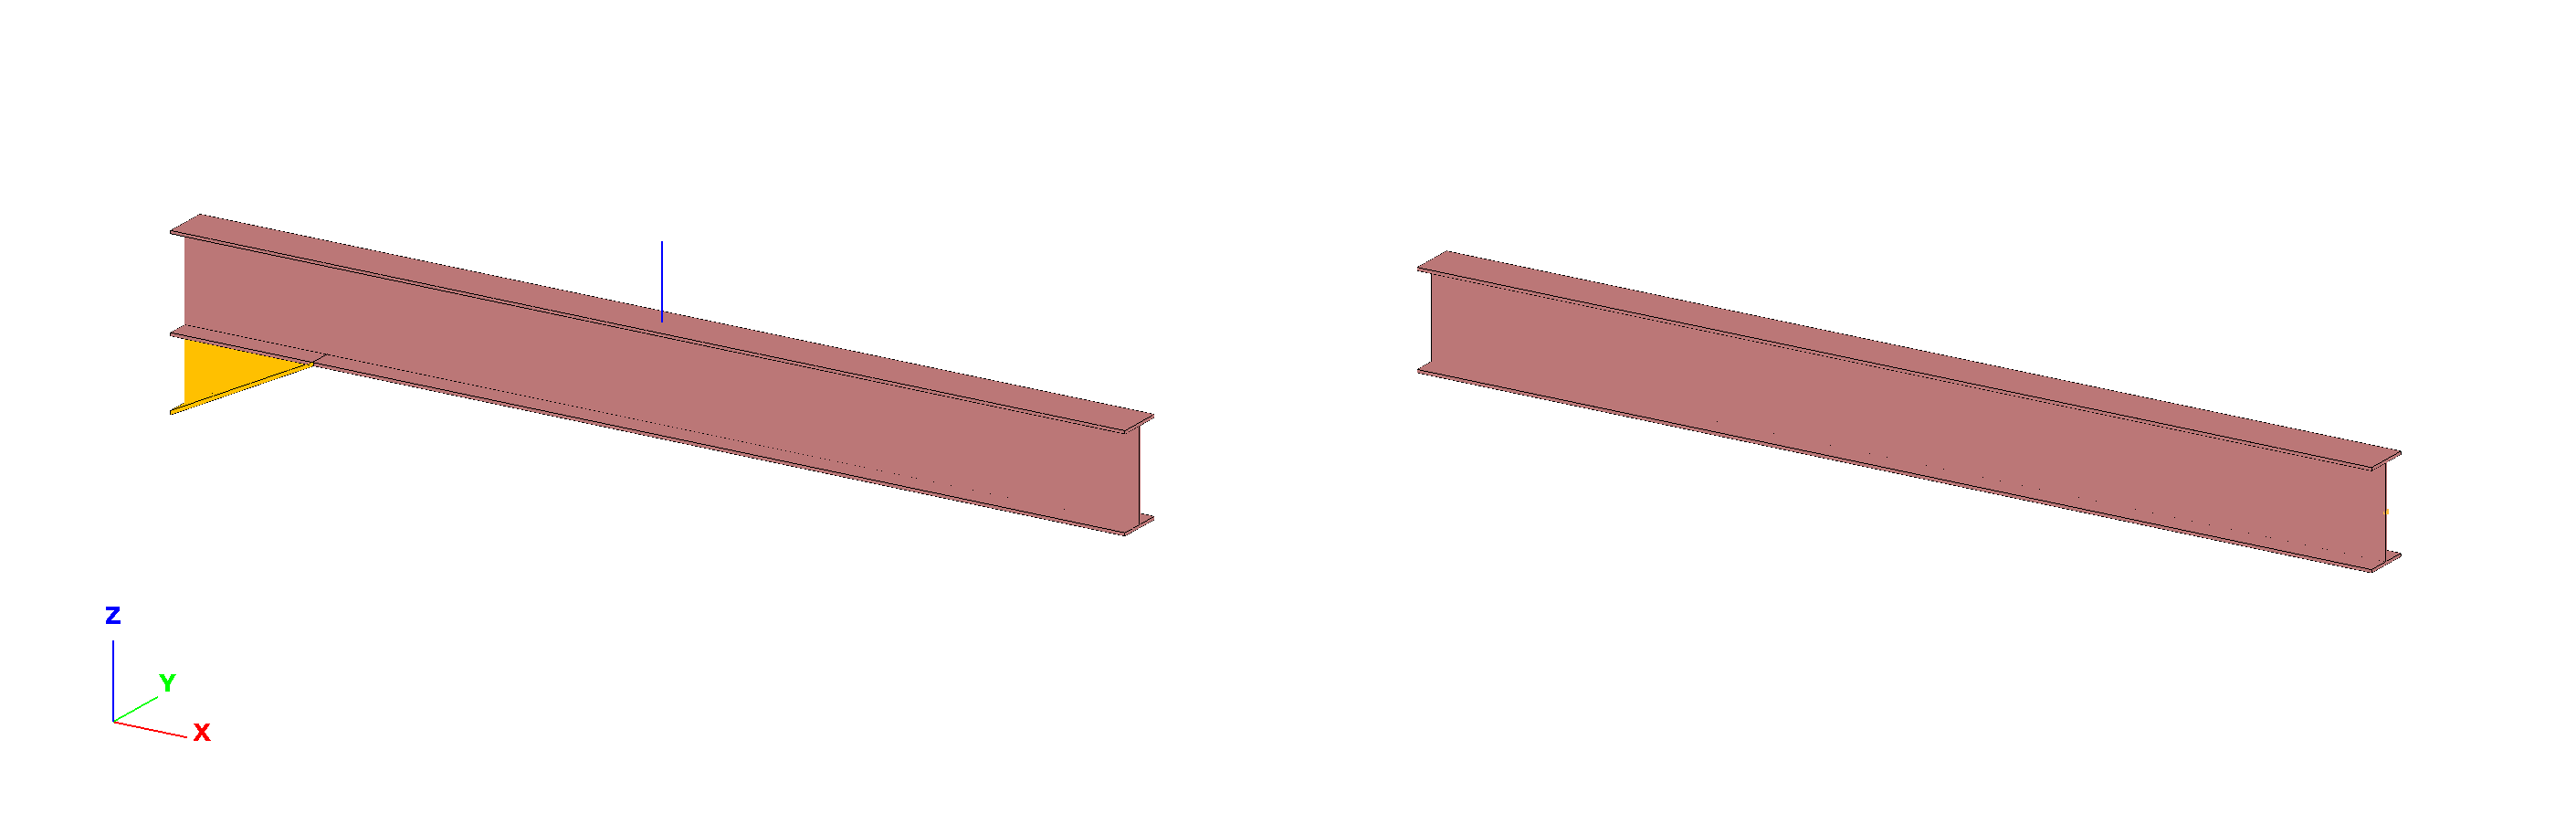 Keretszerkezet Tételezzük fel, hog a 7.8 ábrán látható keretszerkezet oszloptalpai csuklósak és az oldalsó támaszai villásak (azaz, az alsó övek kikönököltek).